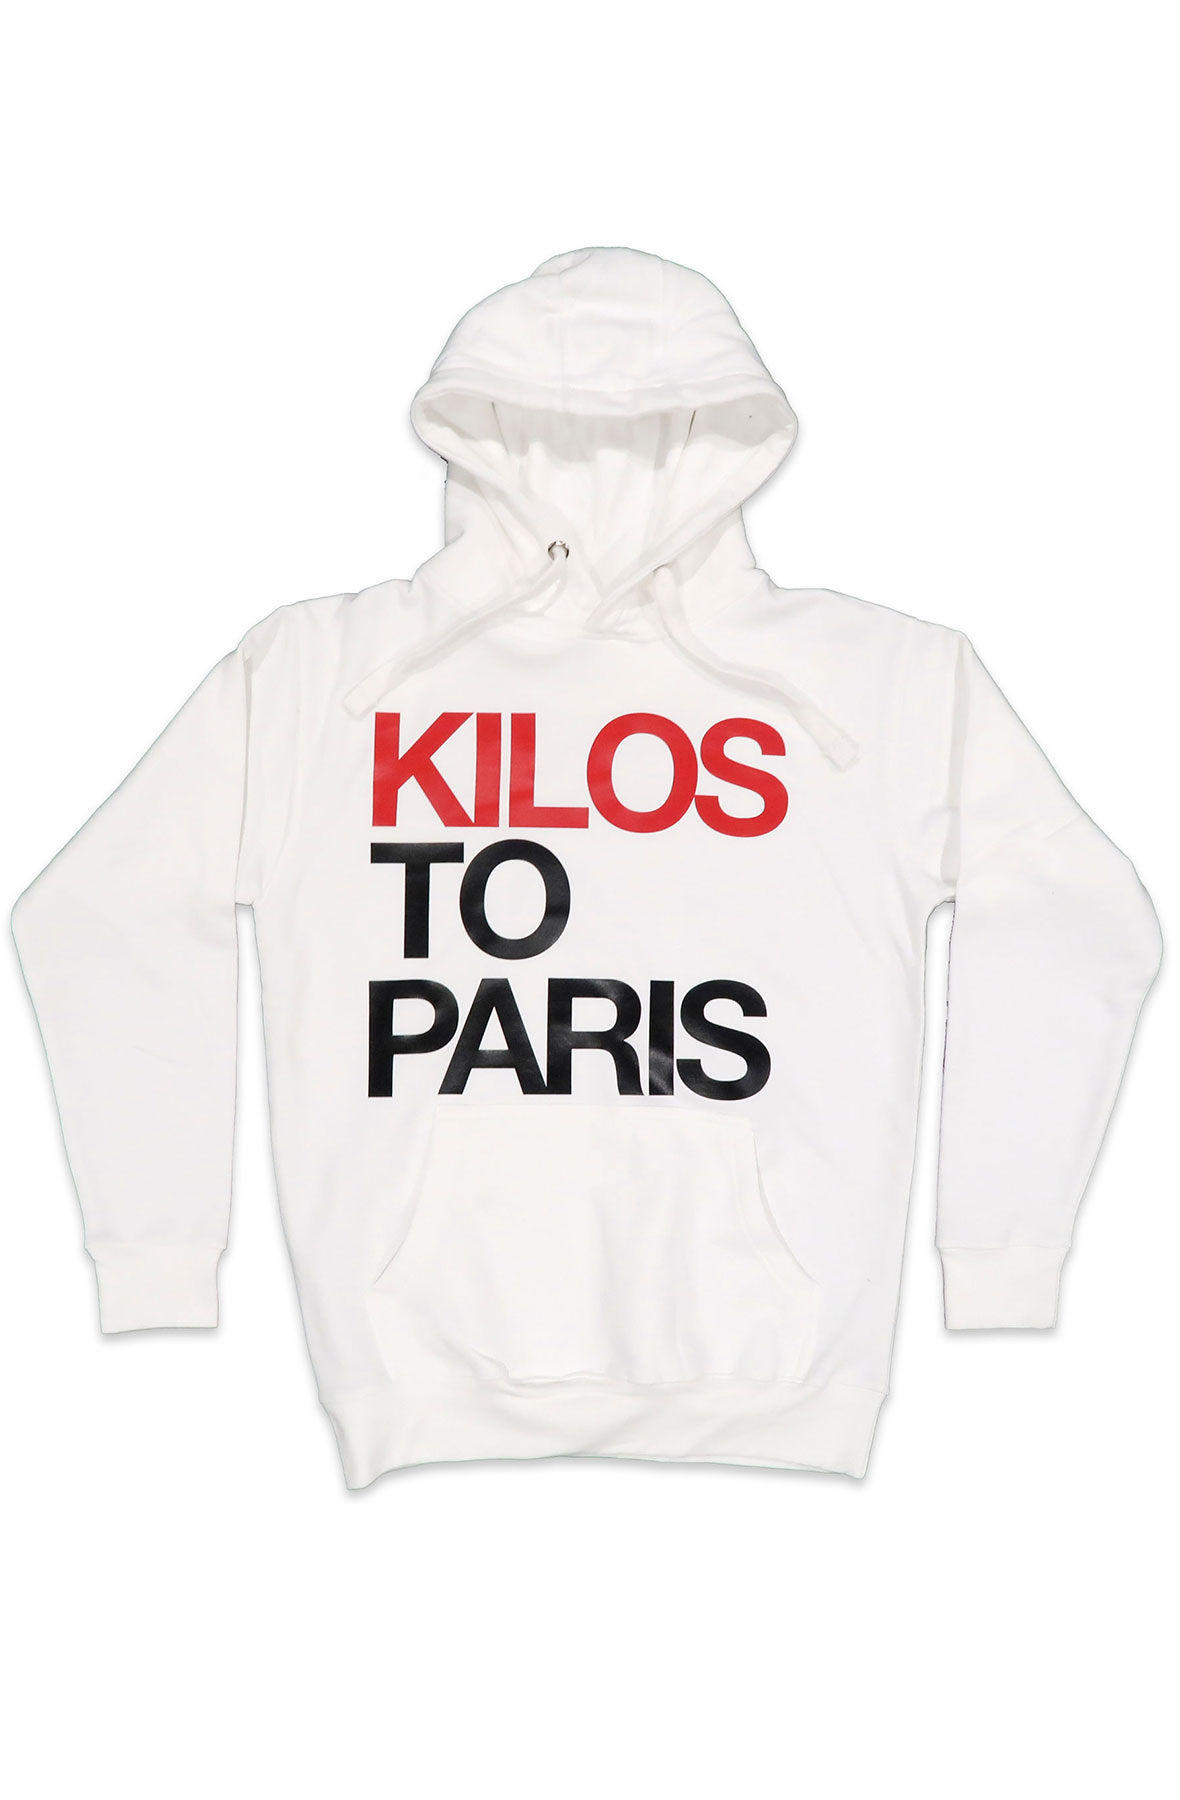 retro kilos to paris hoodie in white